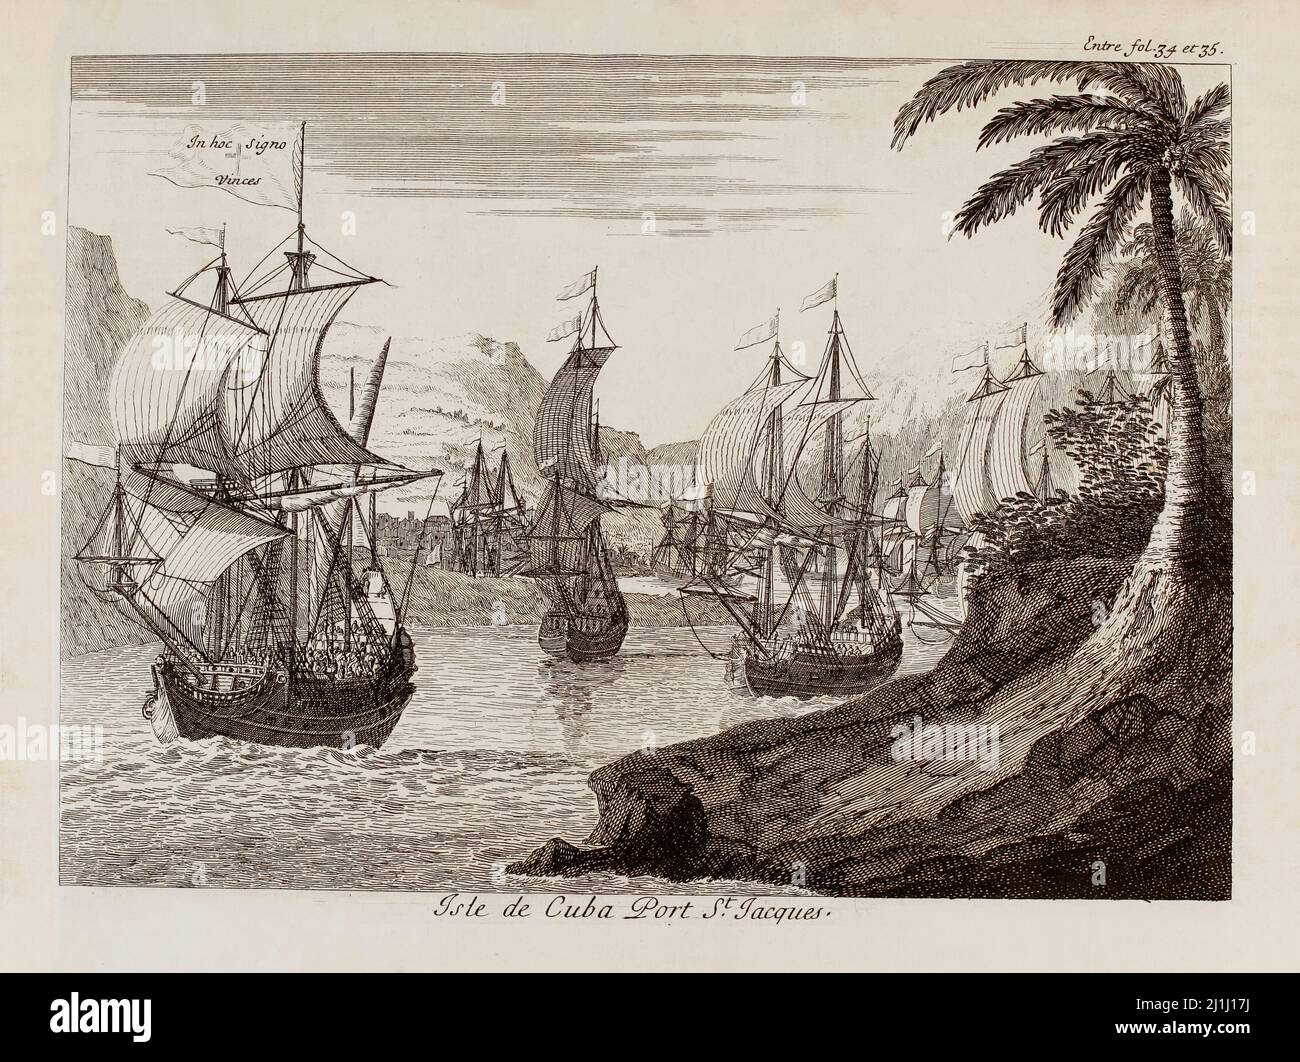 Grabado del siglo 18th de la isla de Cuba, puerto de San Jacques. Por Jan Karel Donatus Van Beecq (1638-1722) de Historia de la conquista de México o lo Nuevo Foto de stock